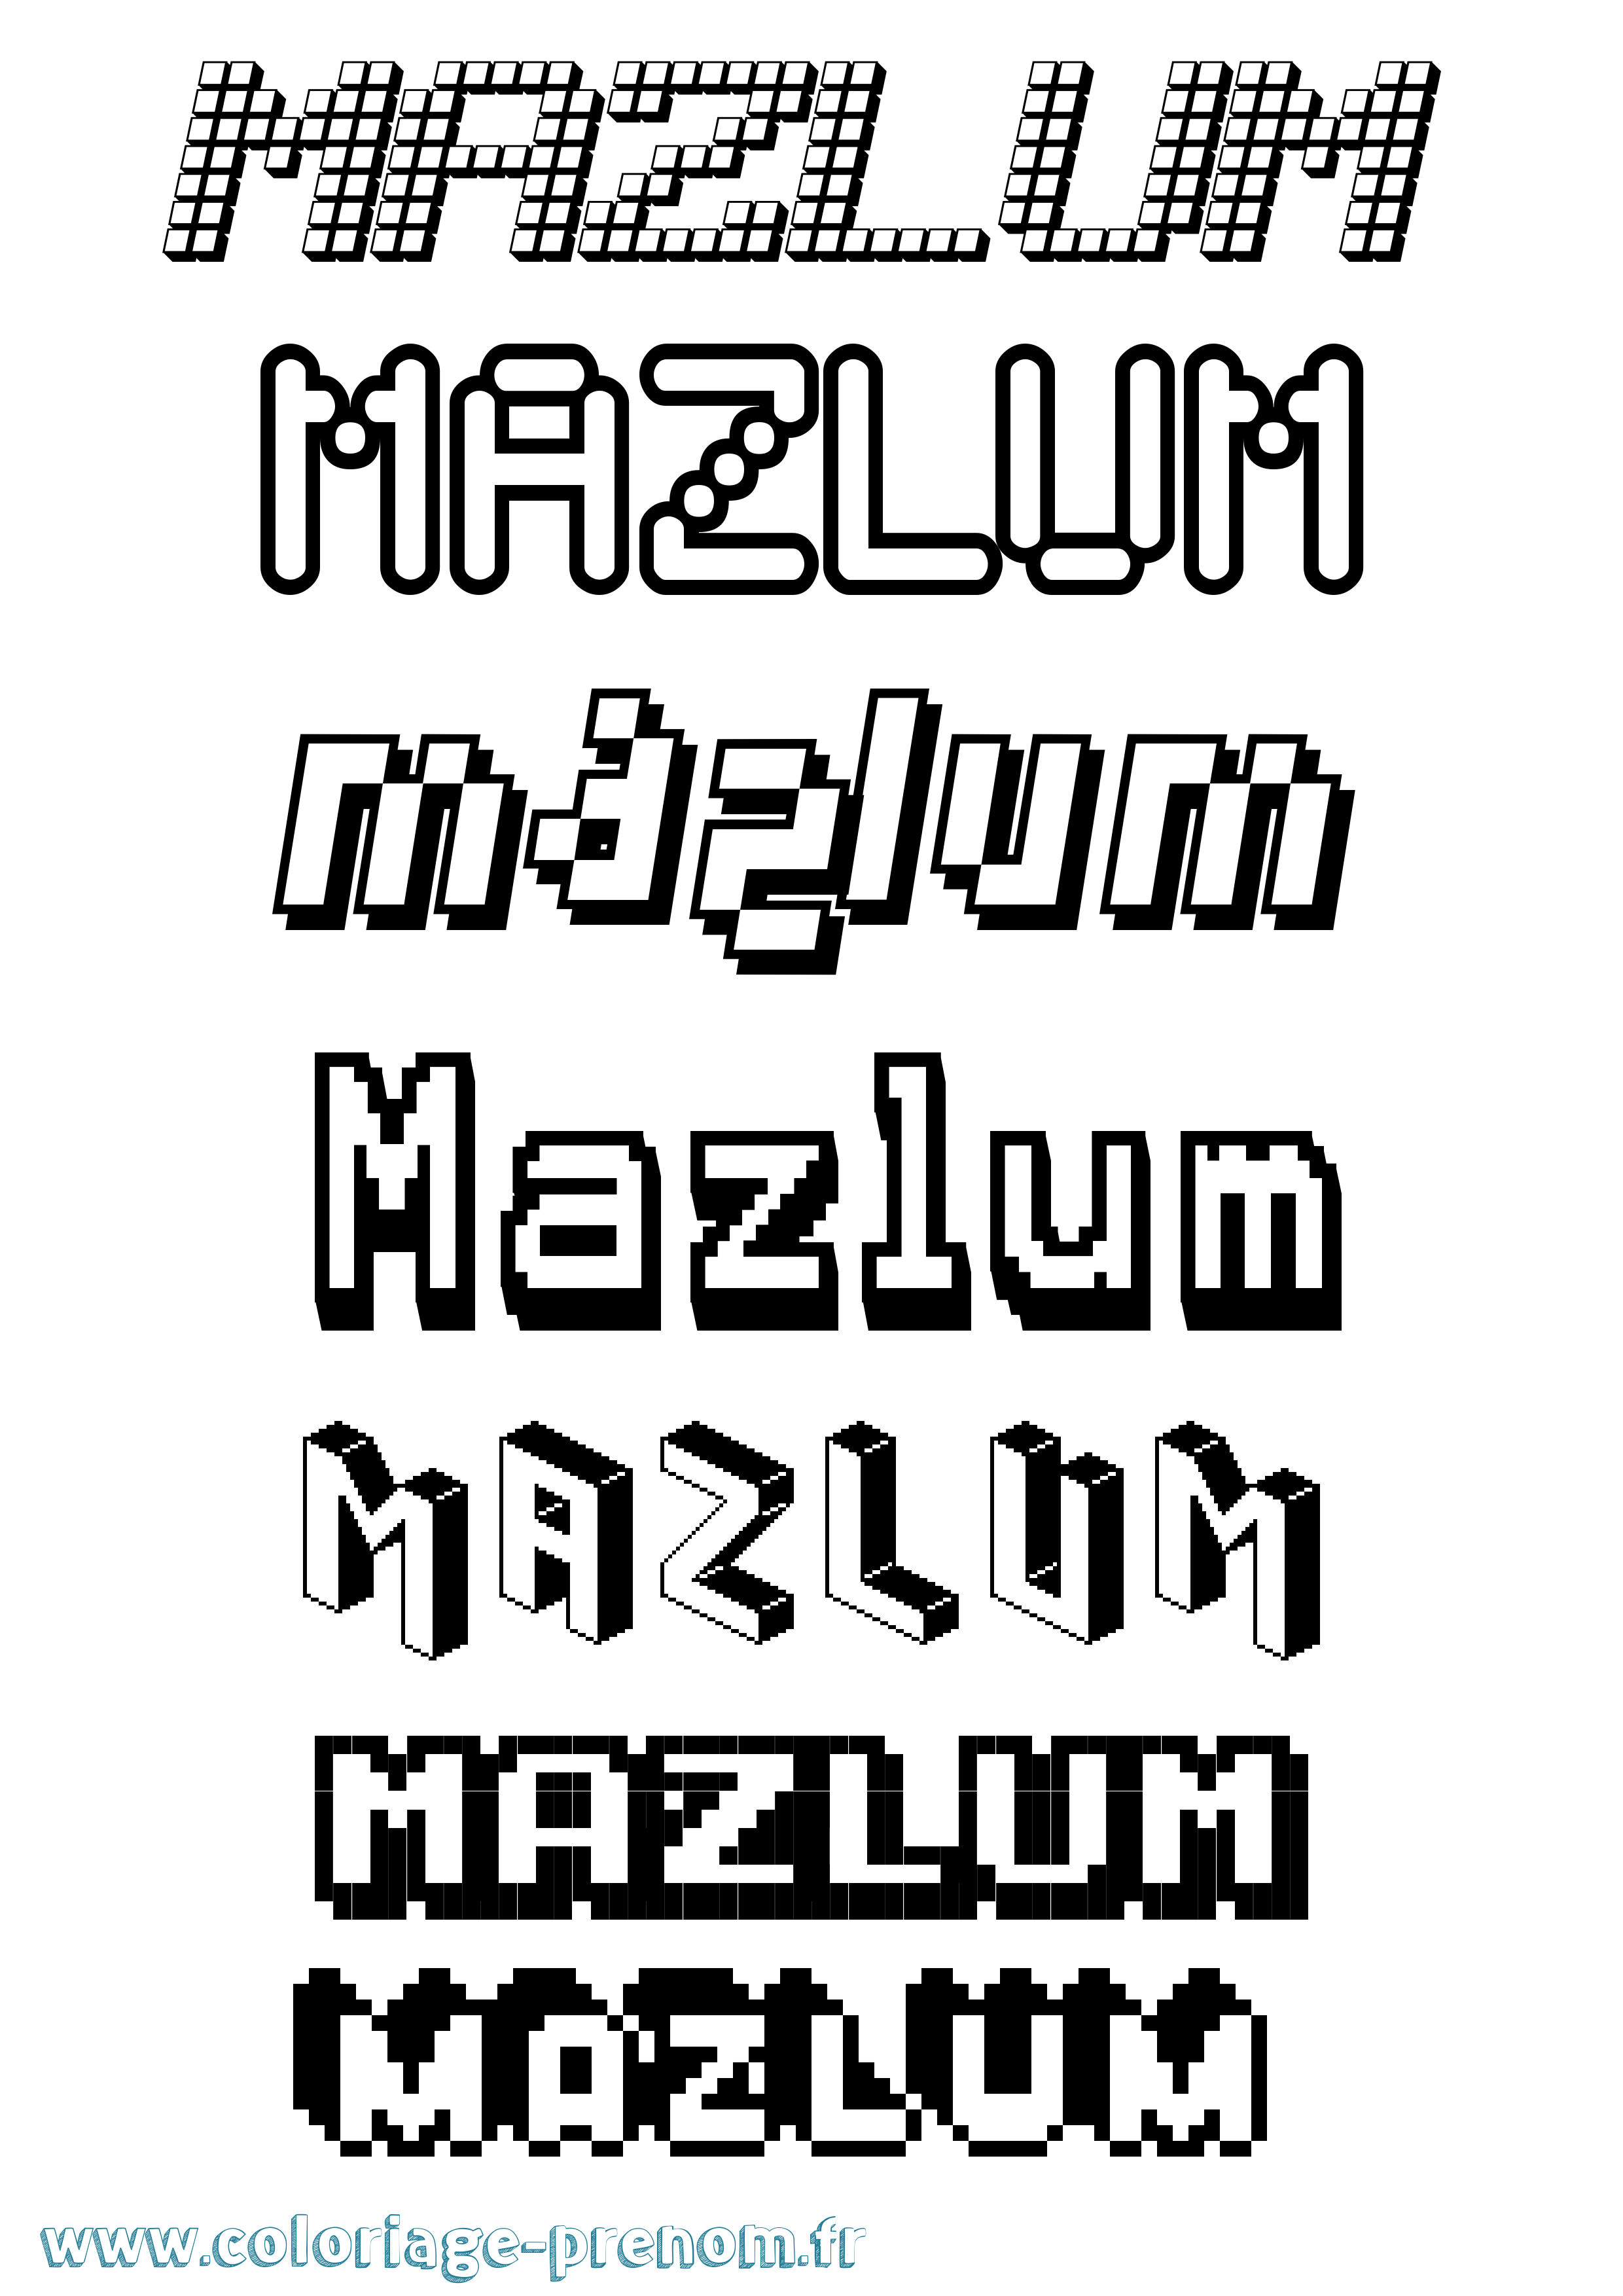 Coloriage prénom Mazlum Pixel